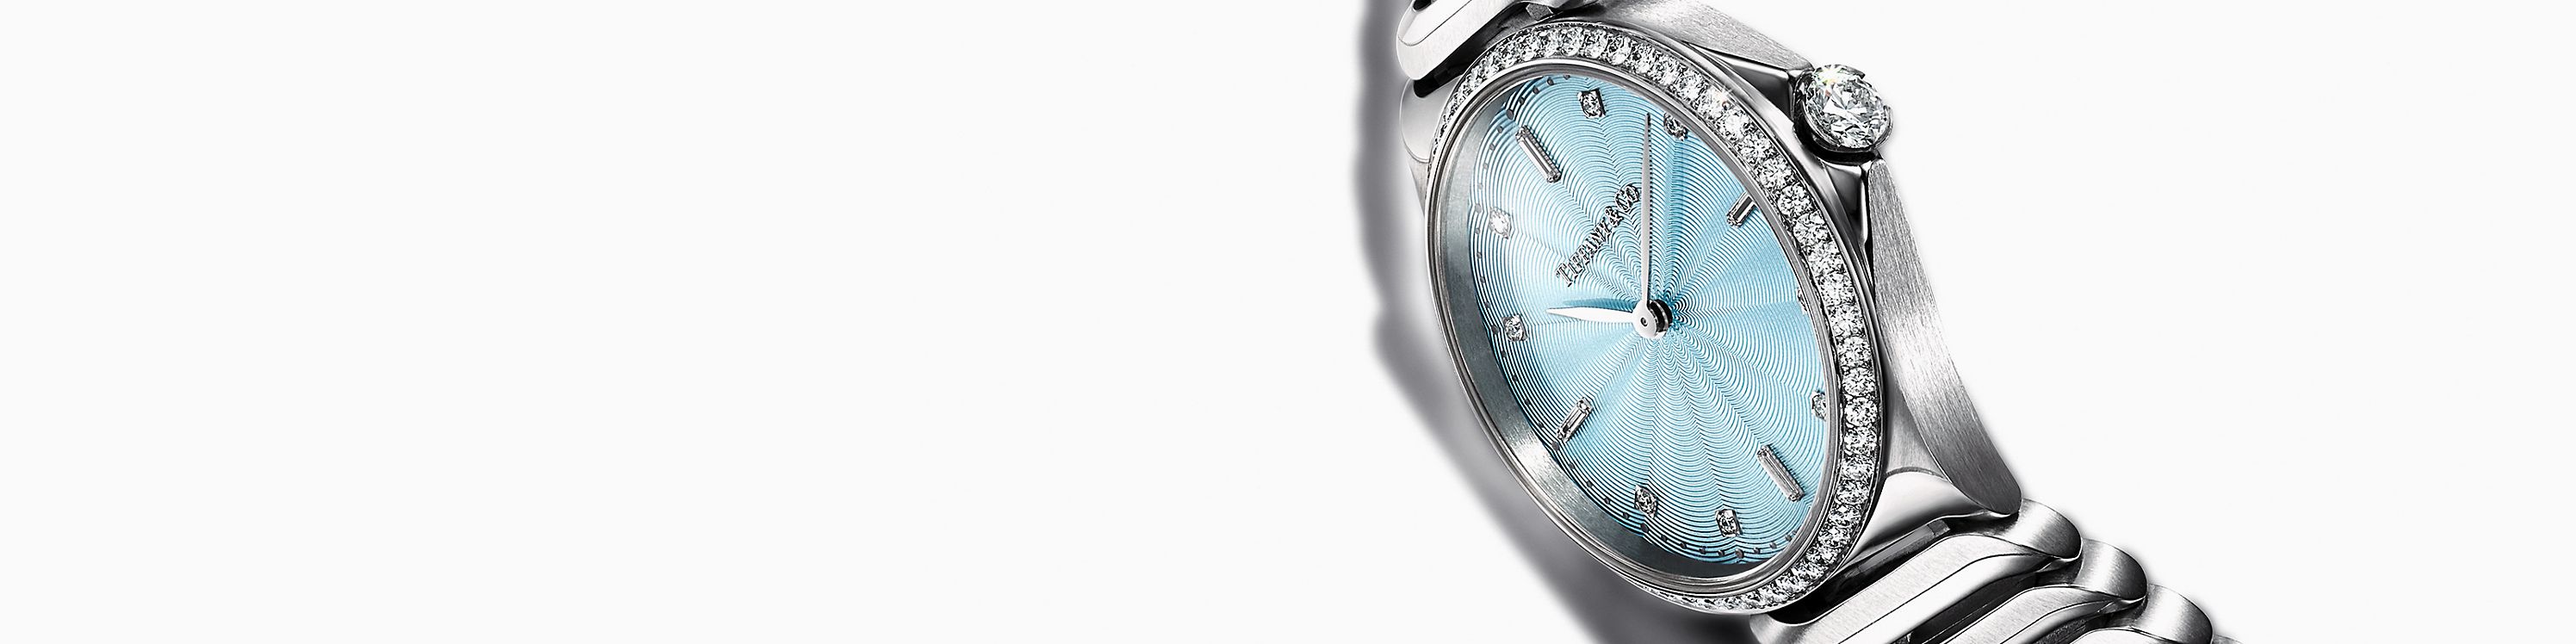 Découvrez les montres Tiffany Metro de Tiffany & Co.